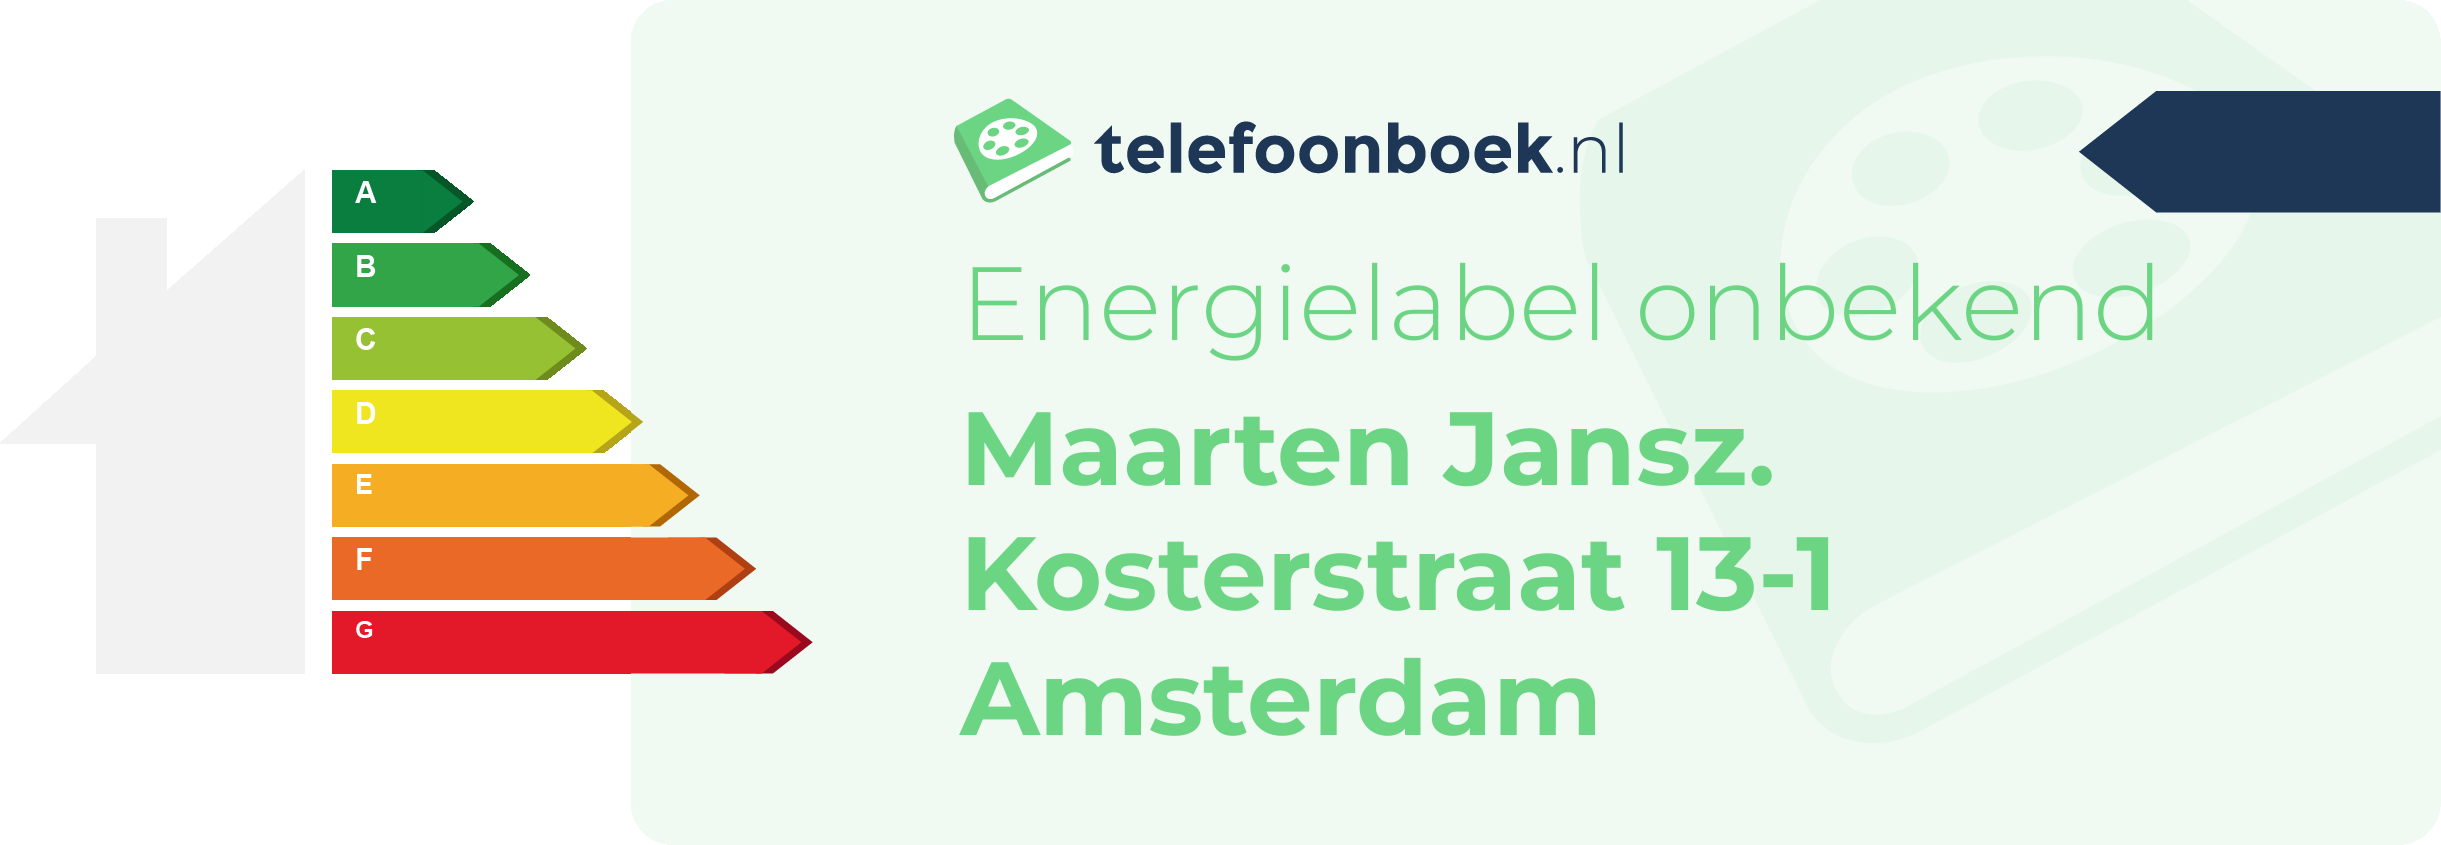 Energielabel Maarten Jansz. Kosterstraat 13-1 Amsterdam